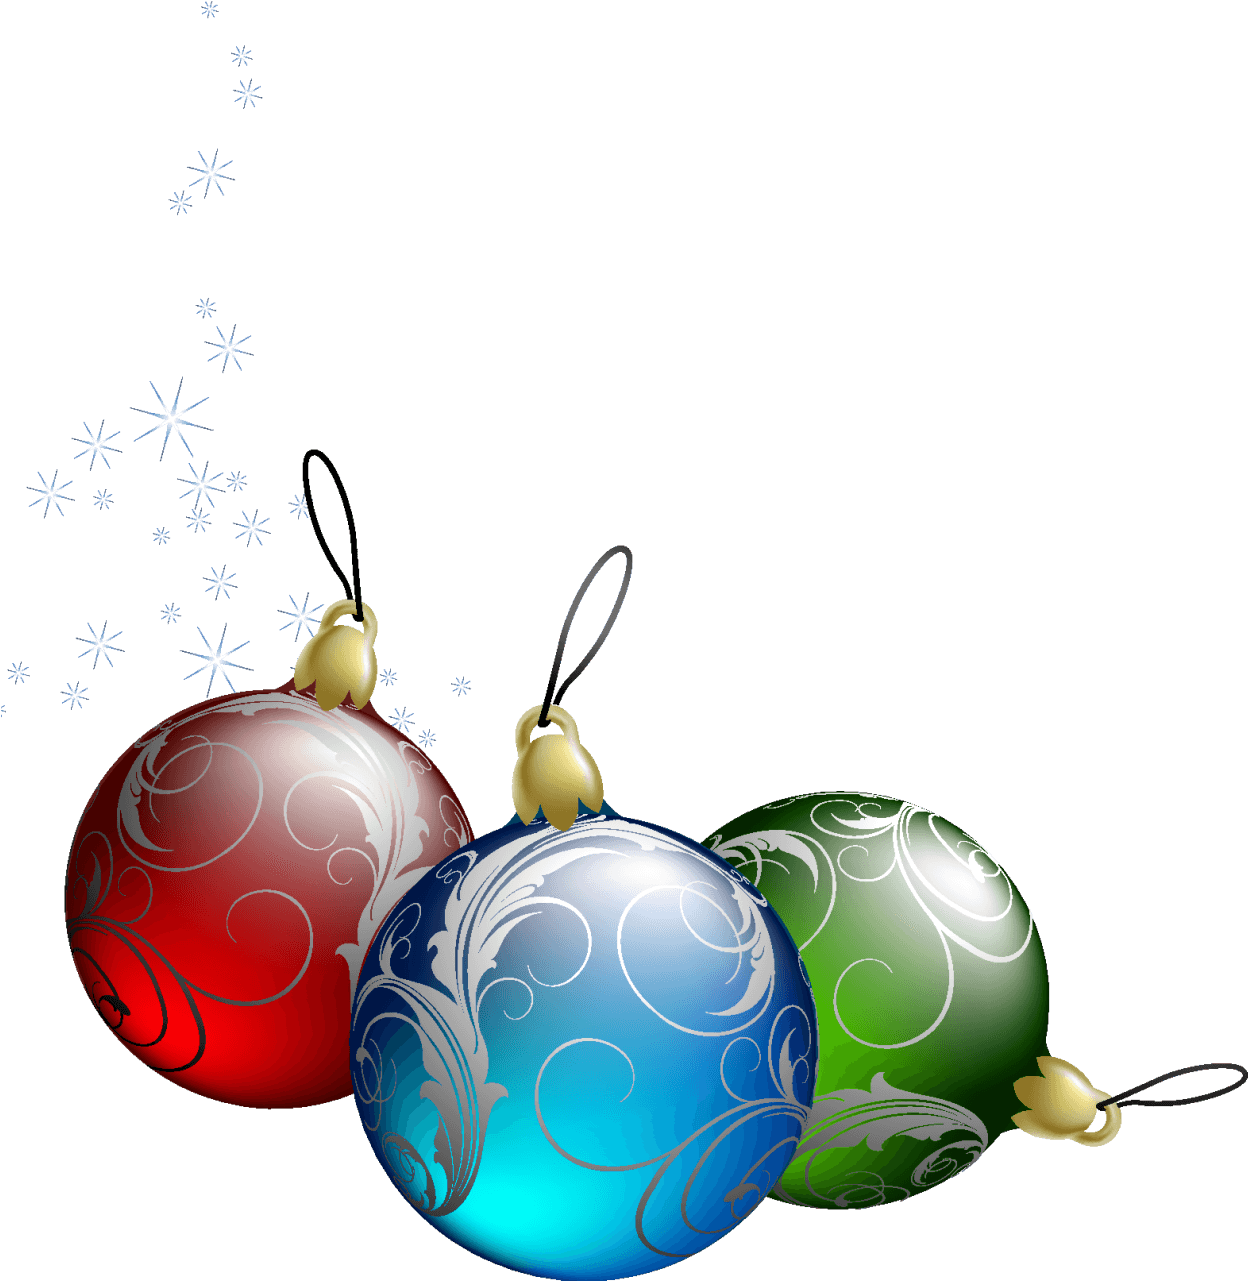 Christmas Ornaments Image - Christmas Day (1258x1326)